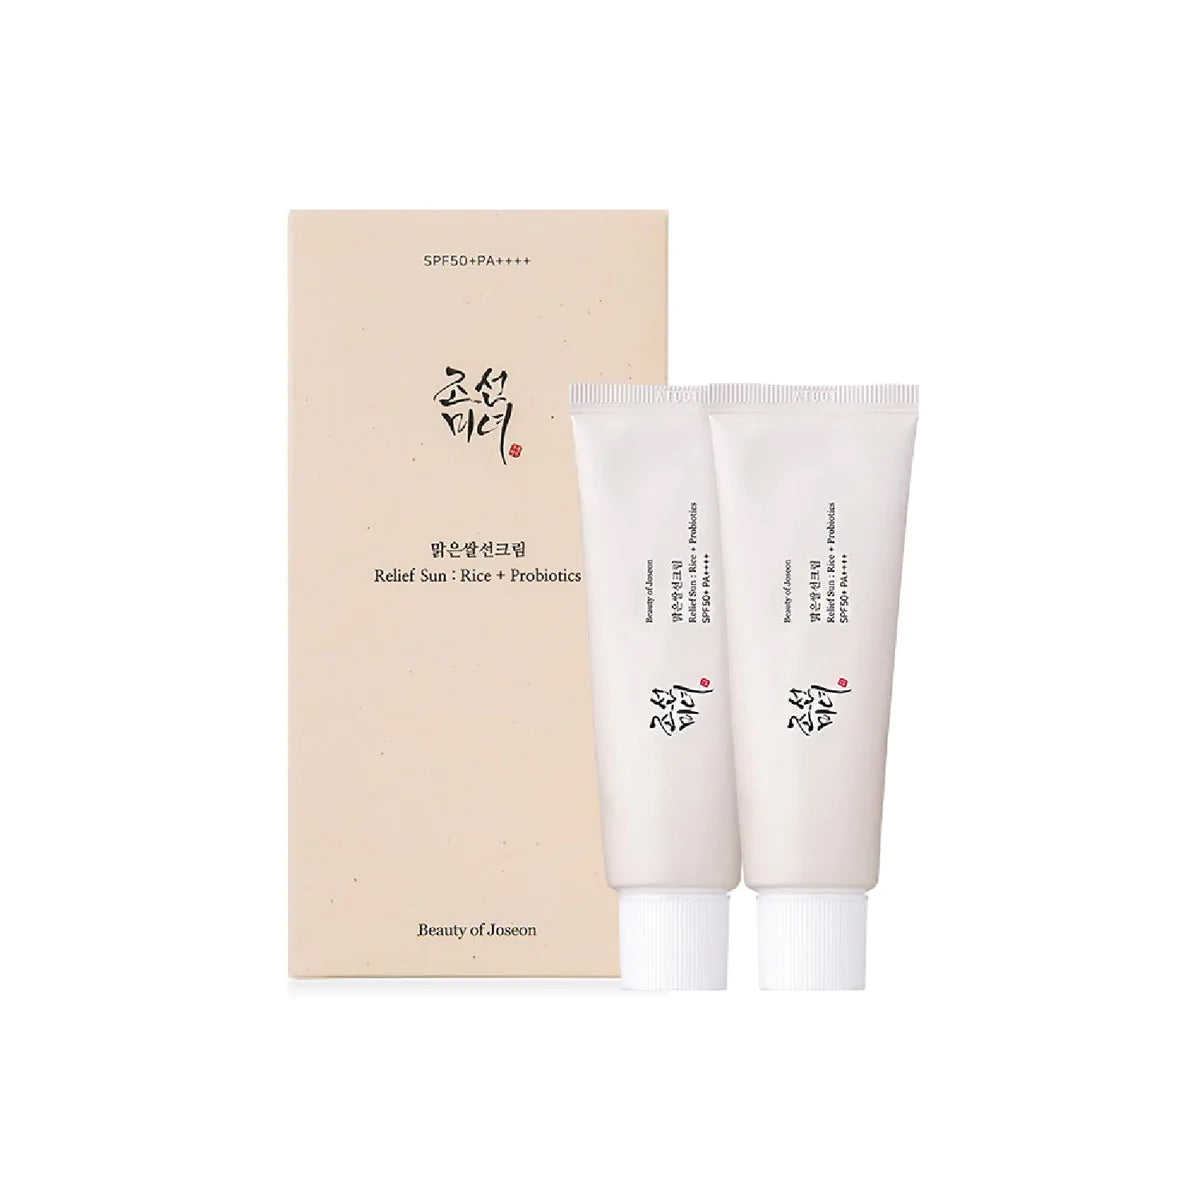 Beauty of Joseon Rice + Probiotics Relief Sunscreen Beauty Beauty of Joseon 2 x 50ml (Value Pack)  